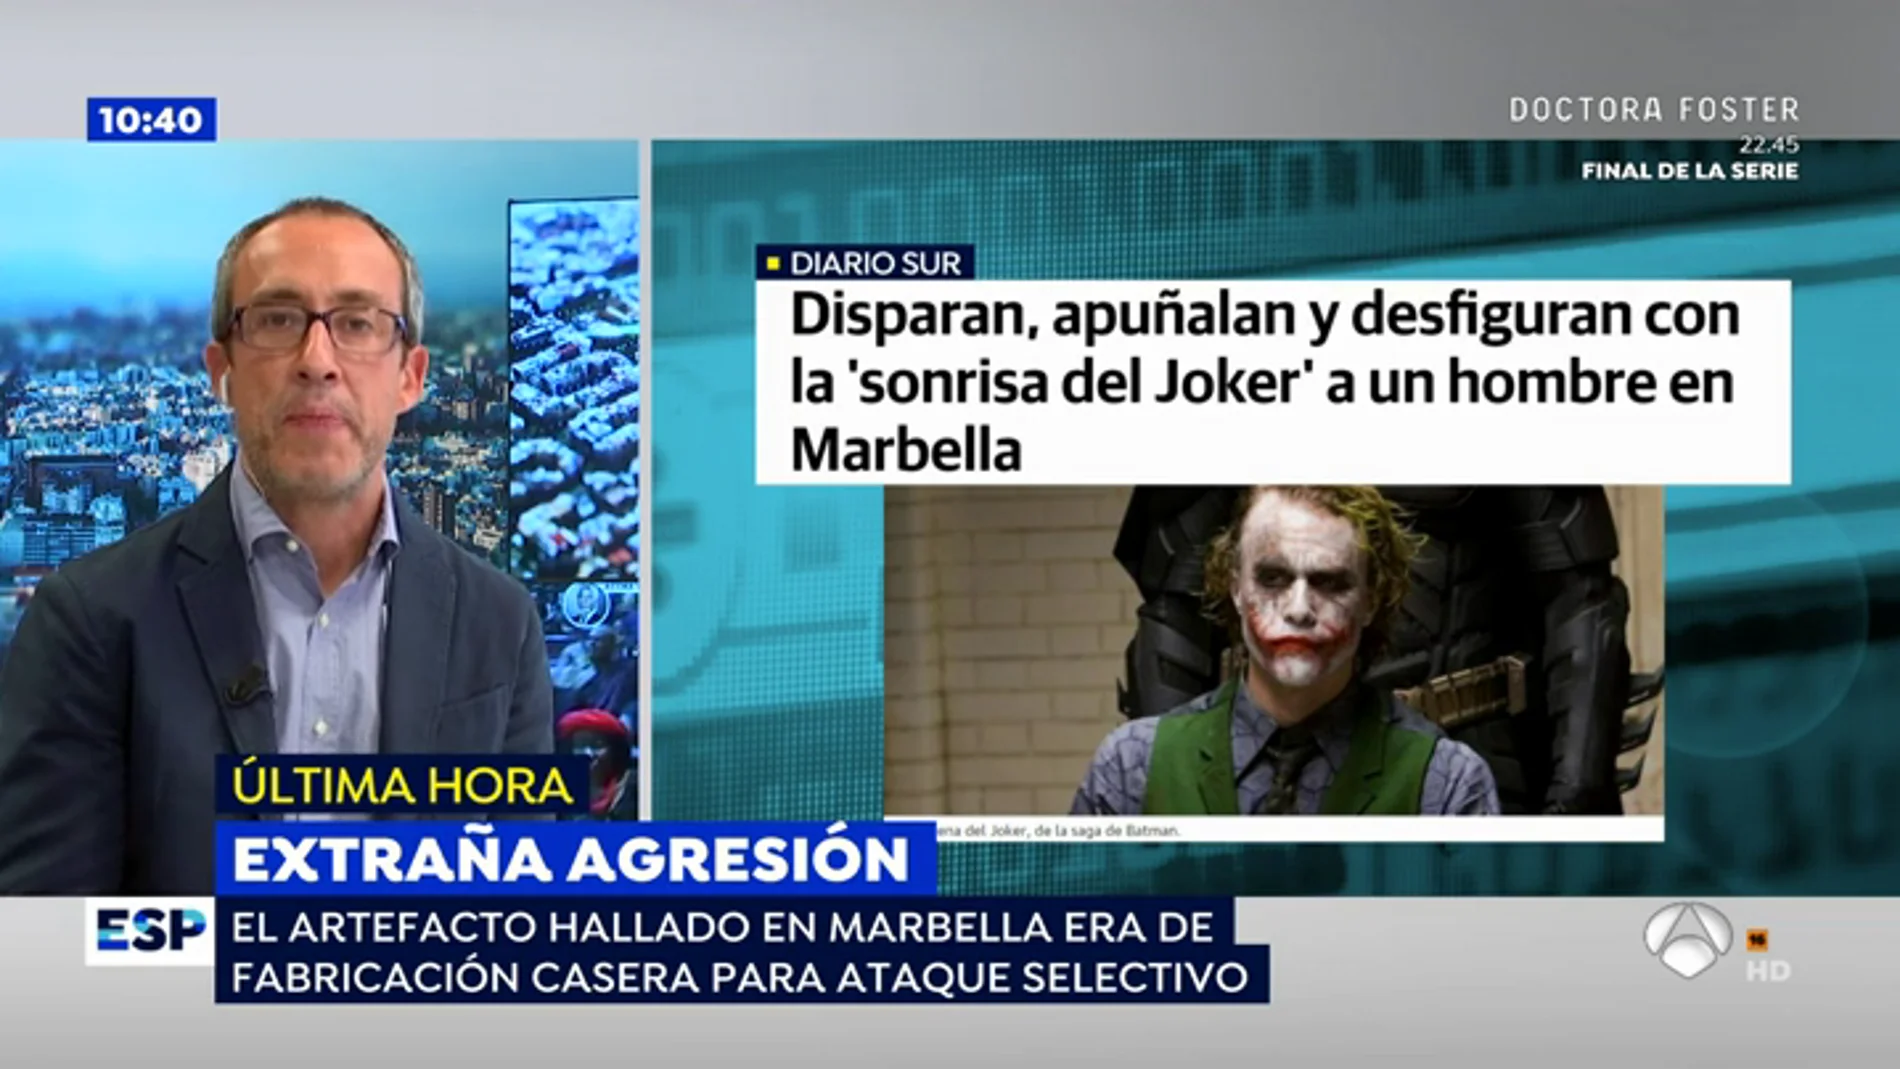 Brutalidad en Marbella: Desfiguran a un británico con 'La sonrisa del Joker' y le disparan en manos y pies